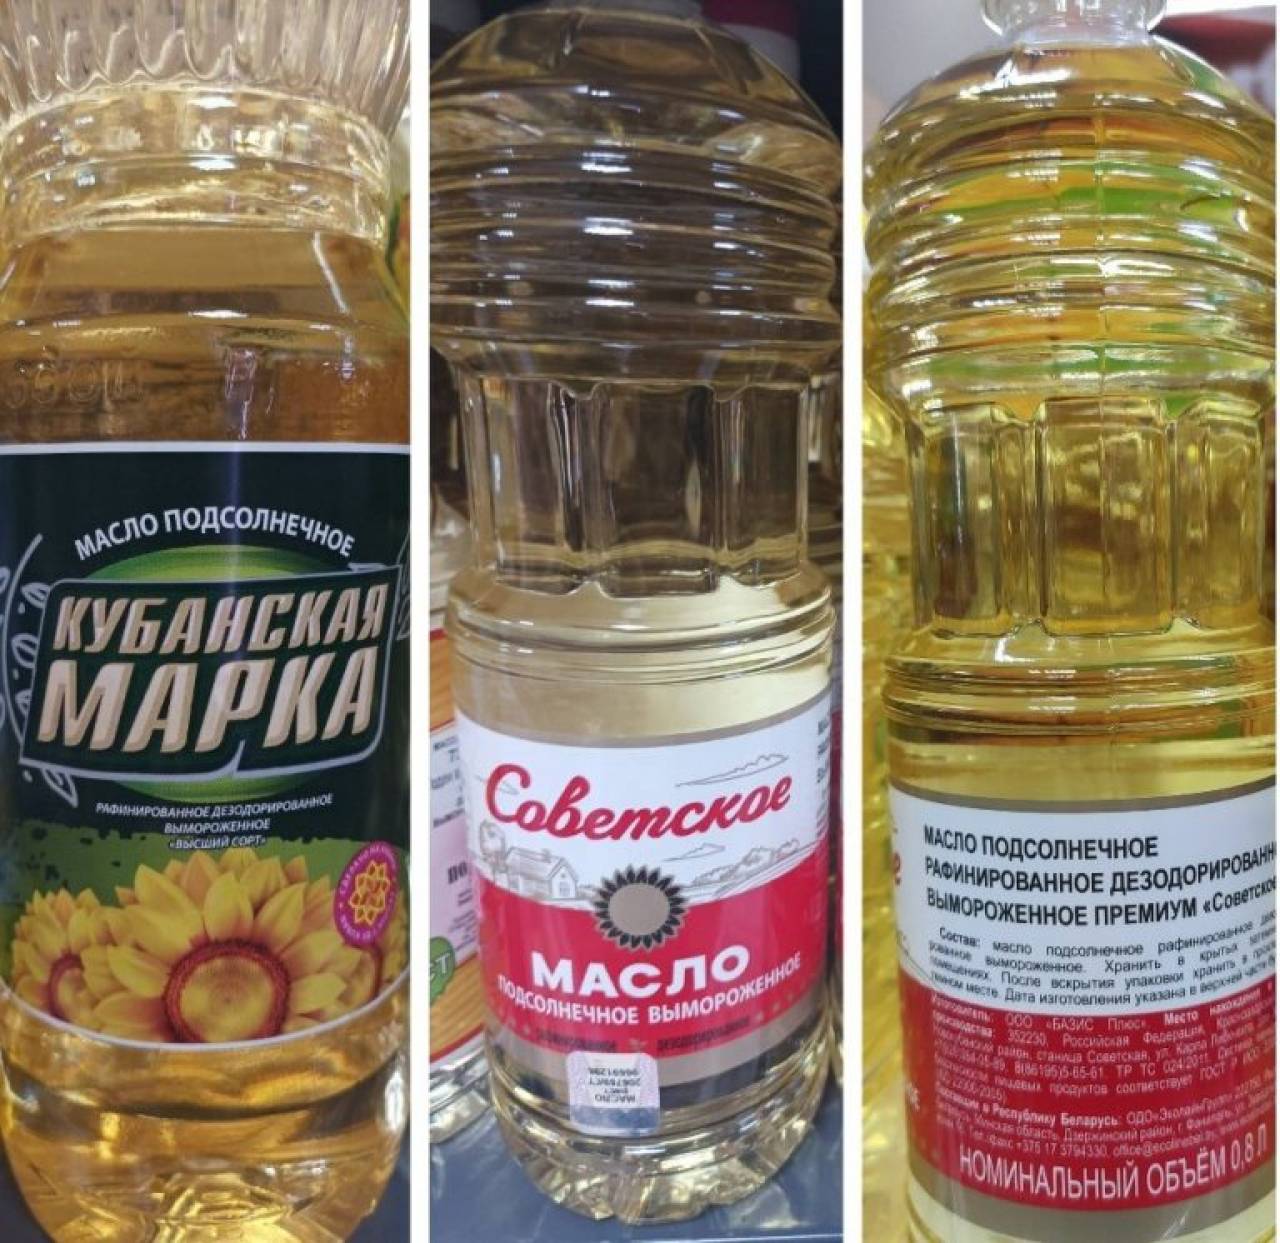 Надписи на этикетке не соответствовали содержимому: в Гродно продавали некачественное подсолнечное масло